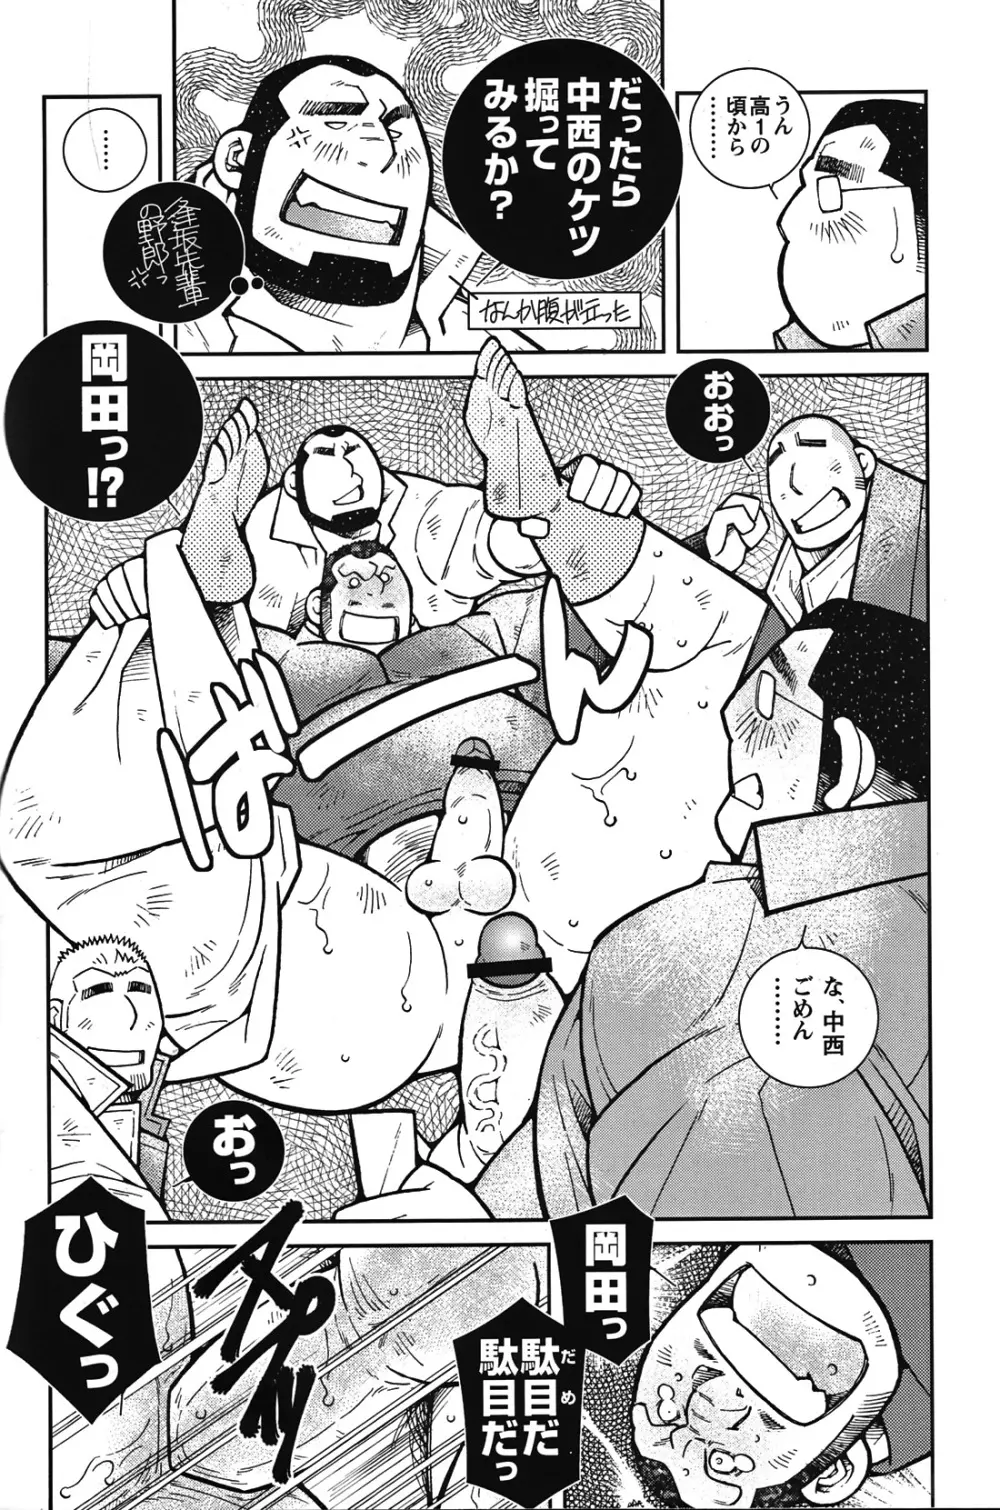 Comic G-men Gaho No.05 192ページ